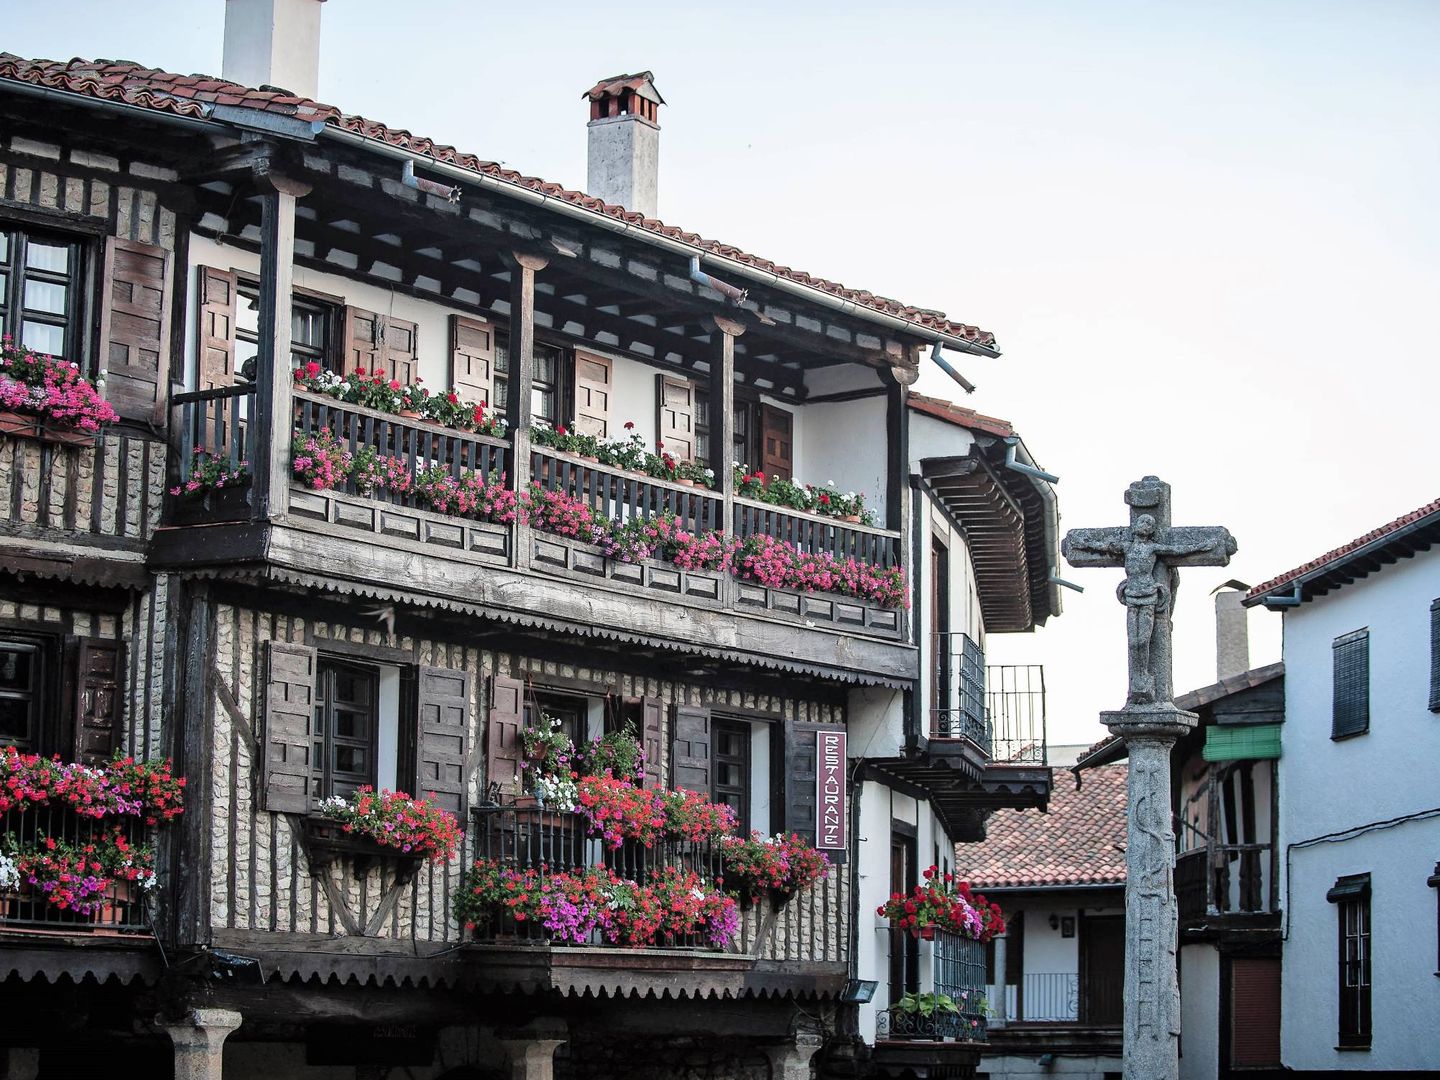 Las casas con sus típicas balconadas y sus flores componen la estampa más típica de este pueblo salmantino. (Cortesía Turismo La Alberca)